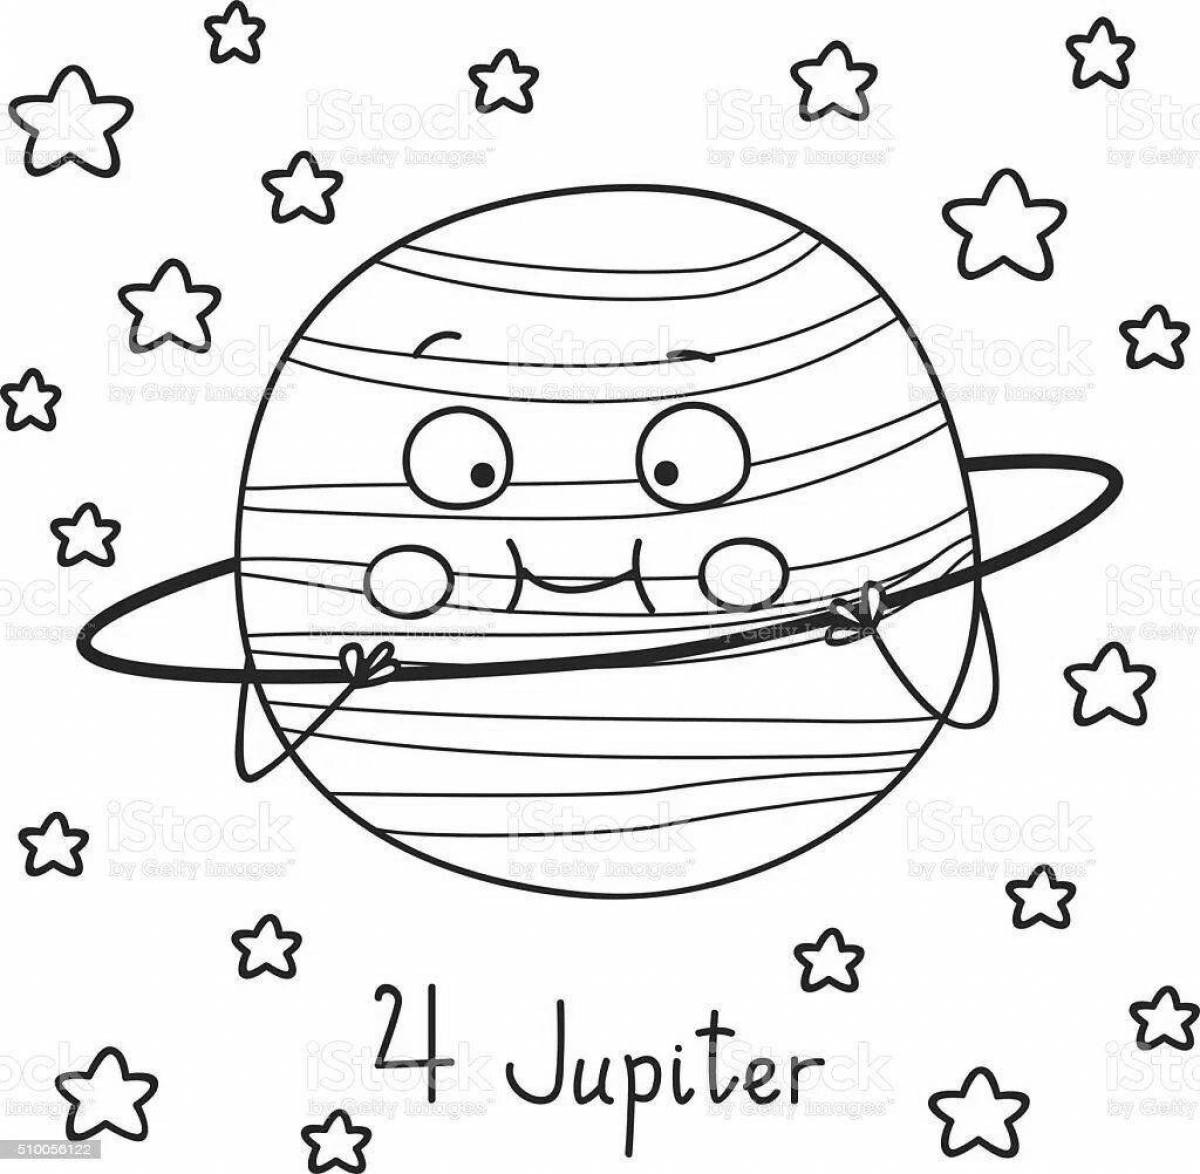 Inspirational Jupiter coloring book for kids